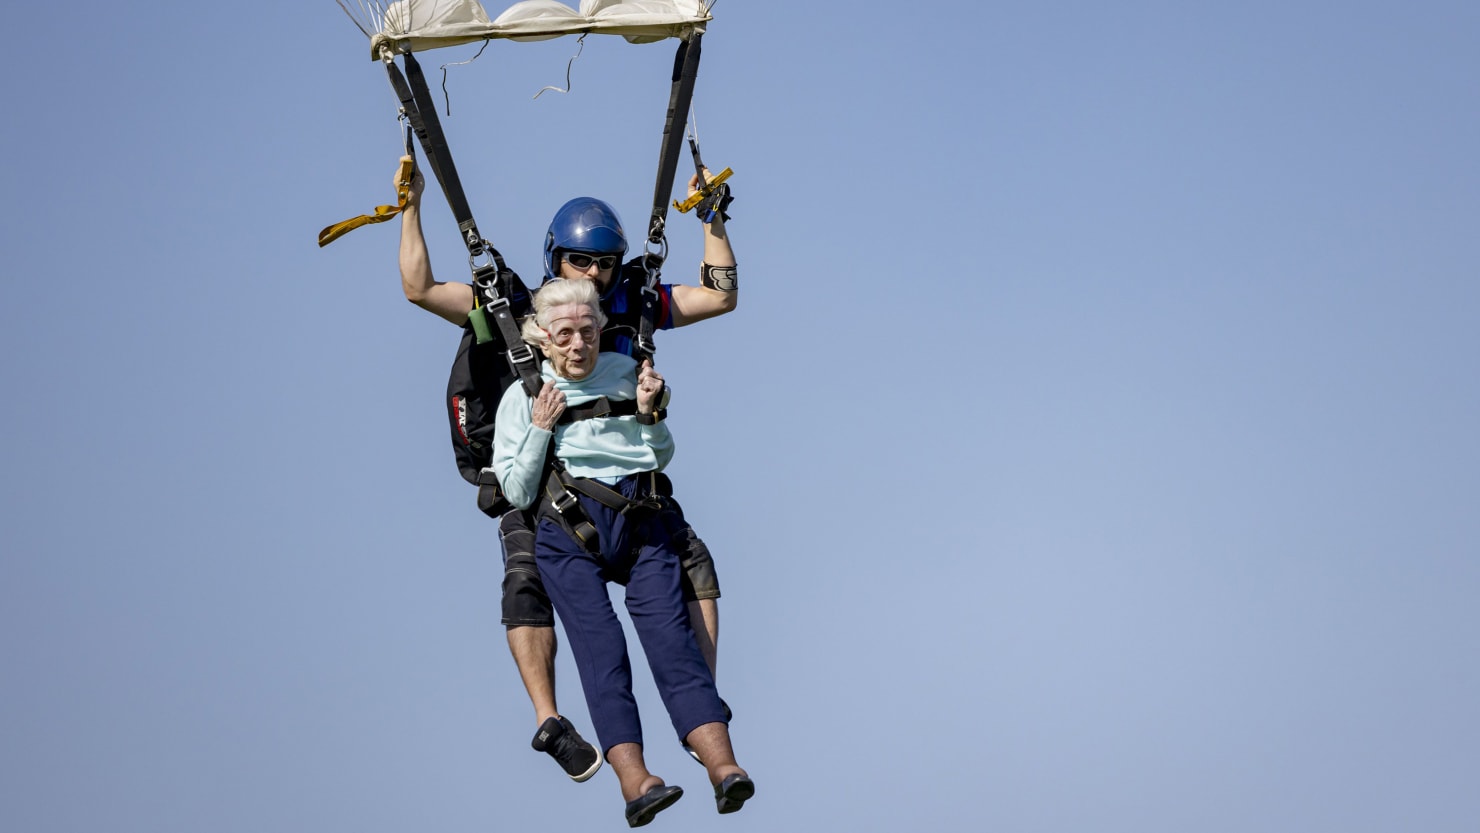 104-Year-Old Dorothy Hoffner Dies a Week After Breaking Skydiving Record